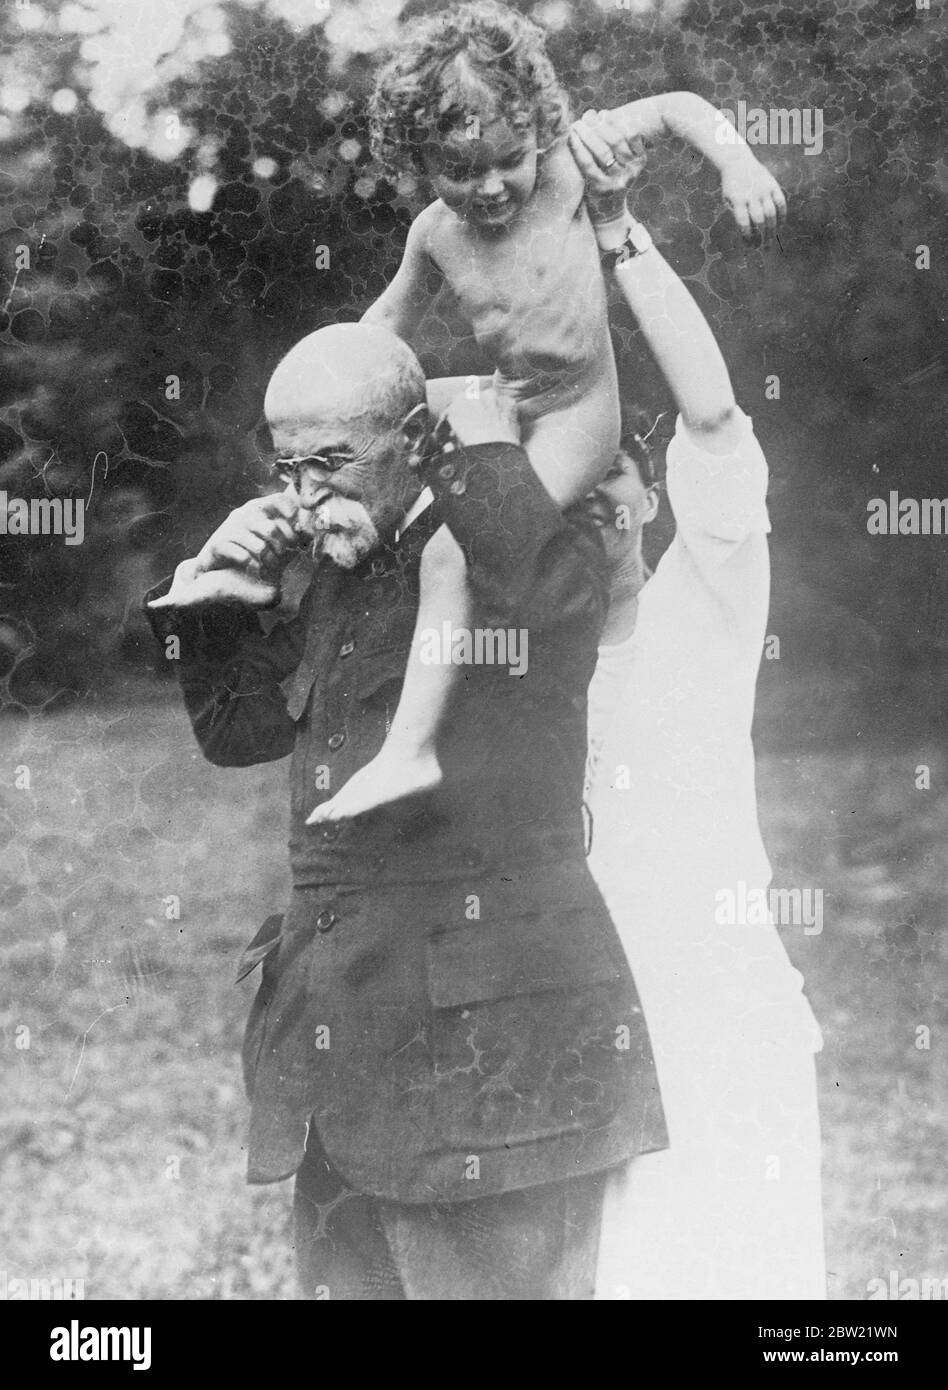 Le Dr T. J. Masaryk, fondateur et premier président de la République tchécoslovaque, gravement malade après un accident vasculaire cérébral au château de Lany, à 20 km de Prague. Le Dr Masaryk, 87 ans, joue avec l'un de ses petits-enfants. 2 septembre 1937 Banque D'Images